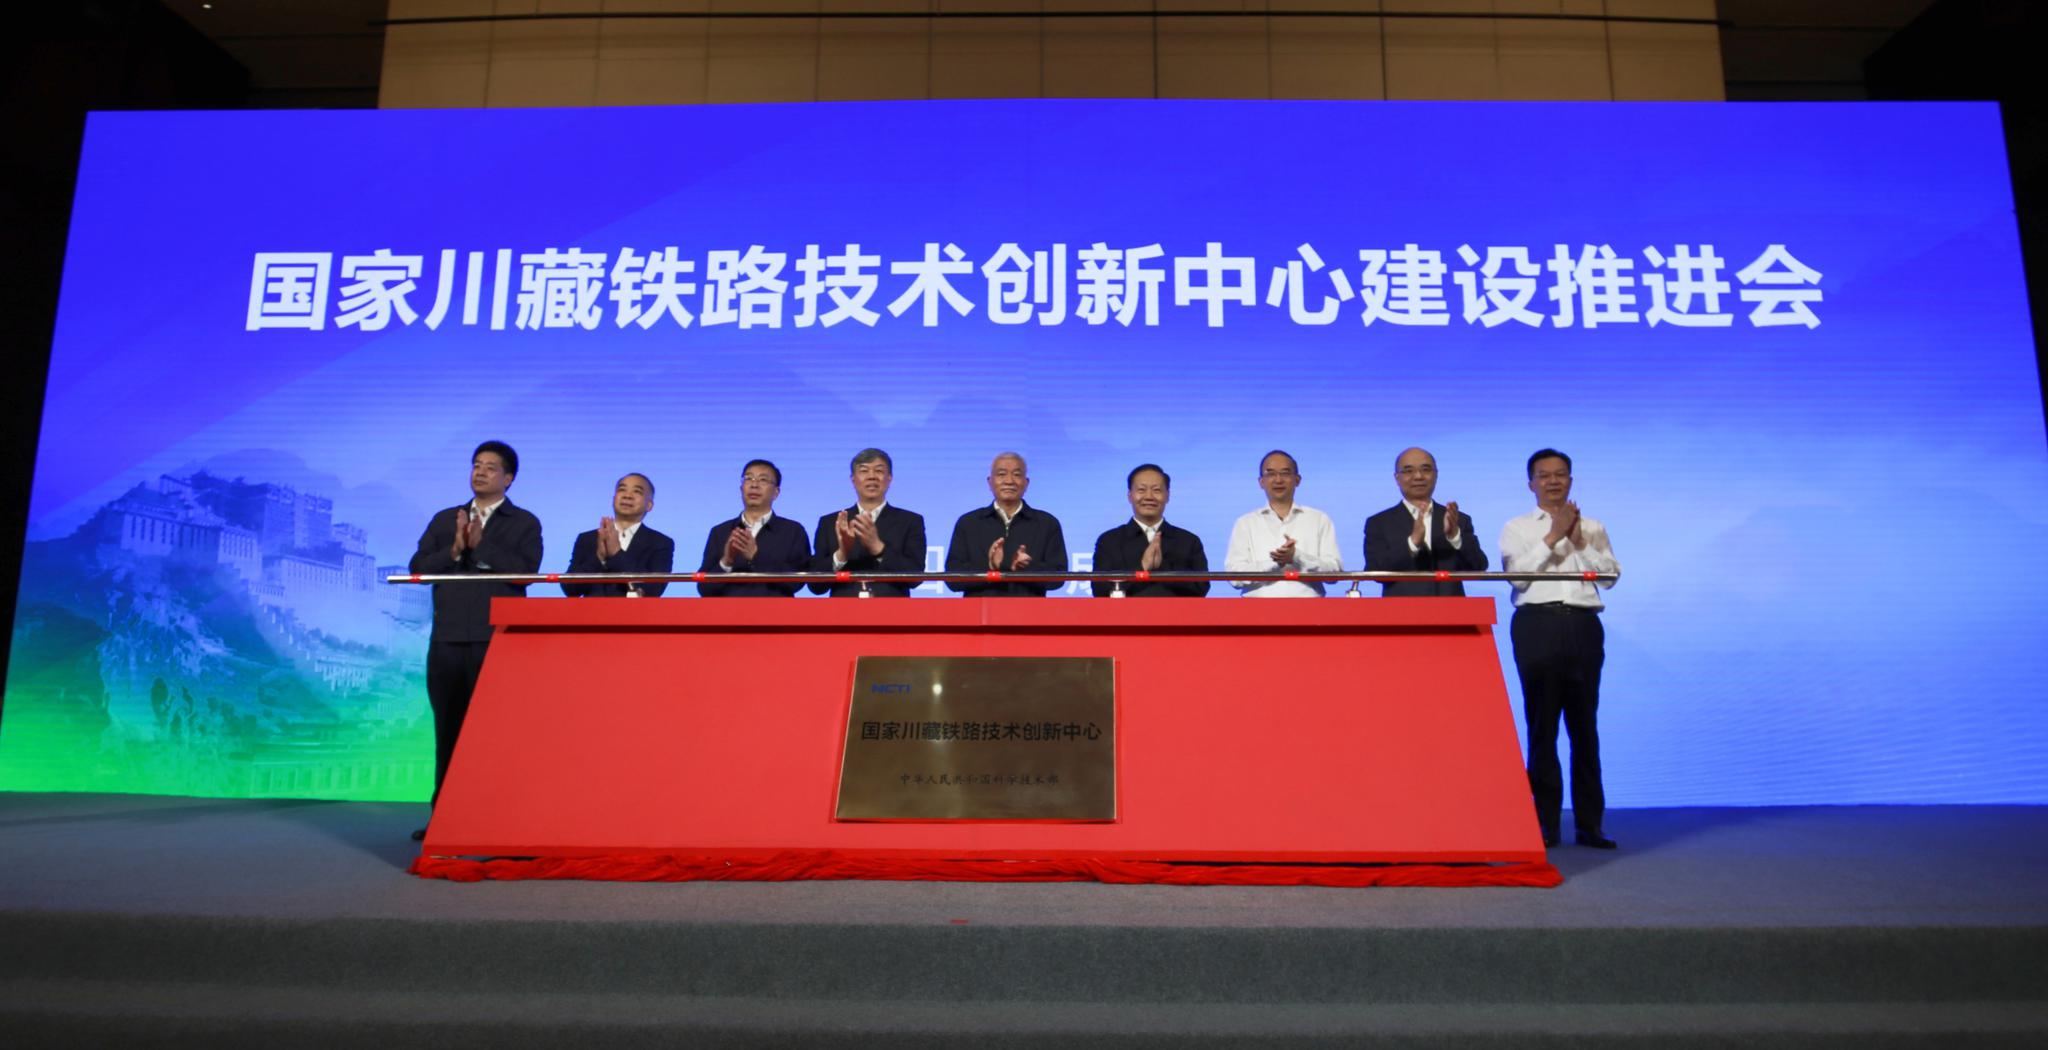 打造铁路科技创新高地 国家川藏铁路技术创新中心揭牌